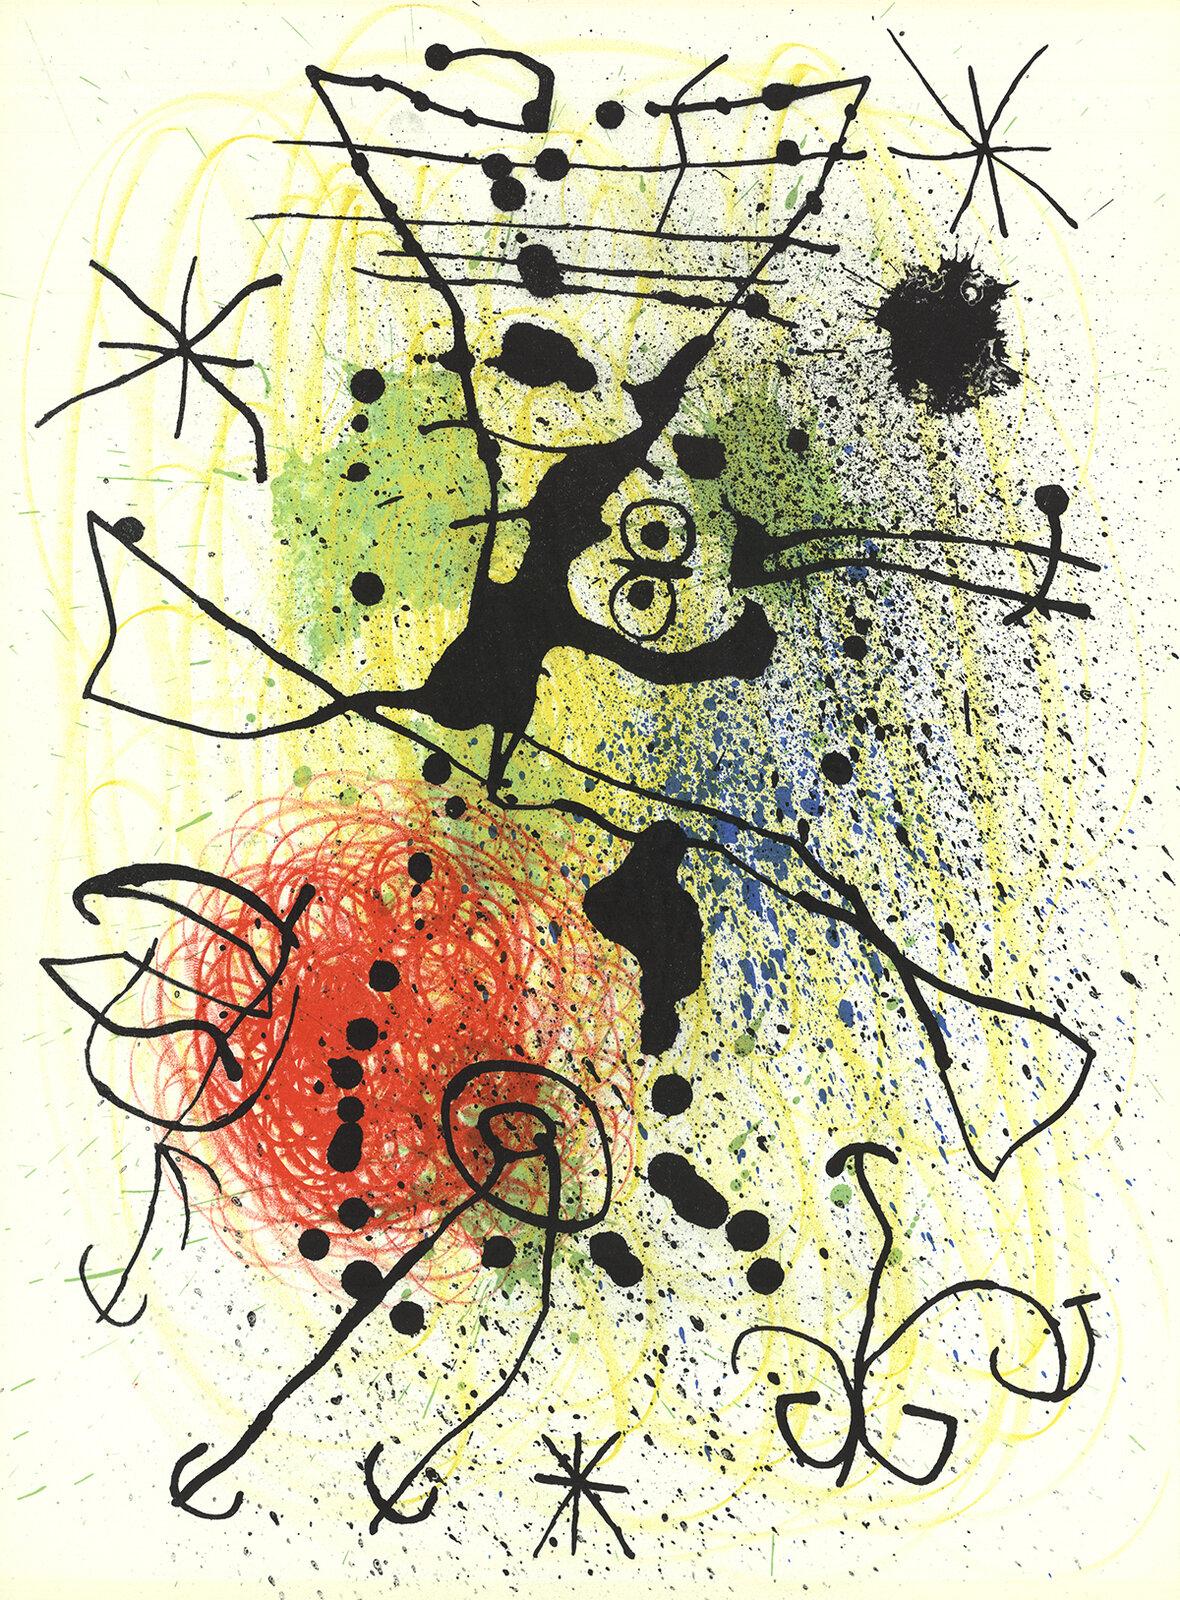 Joan Miró Abstract Print - Miró, Composition, Derrière le miroir (after)